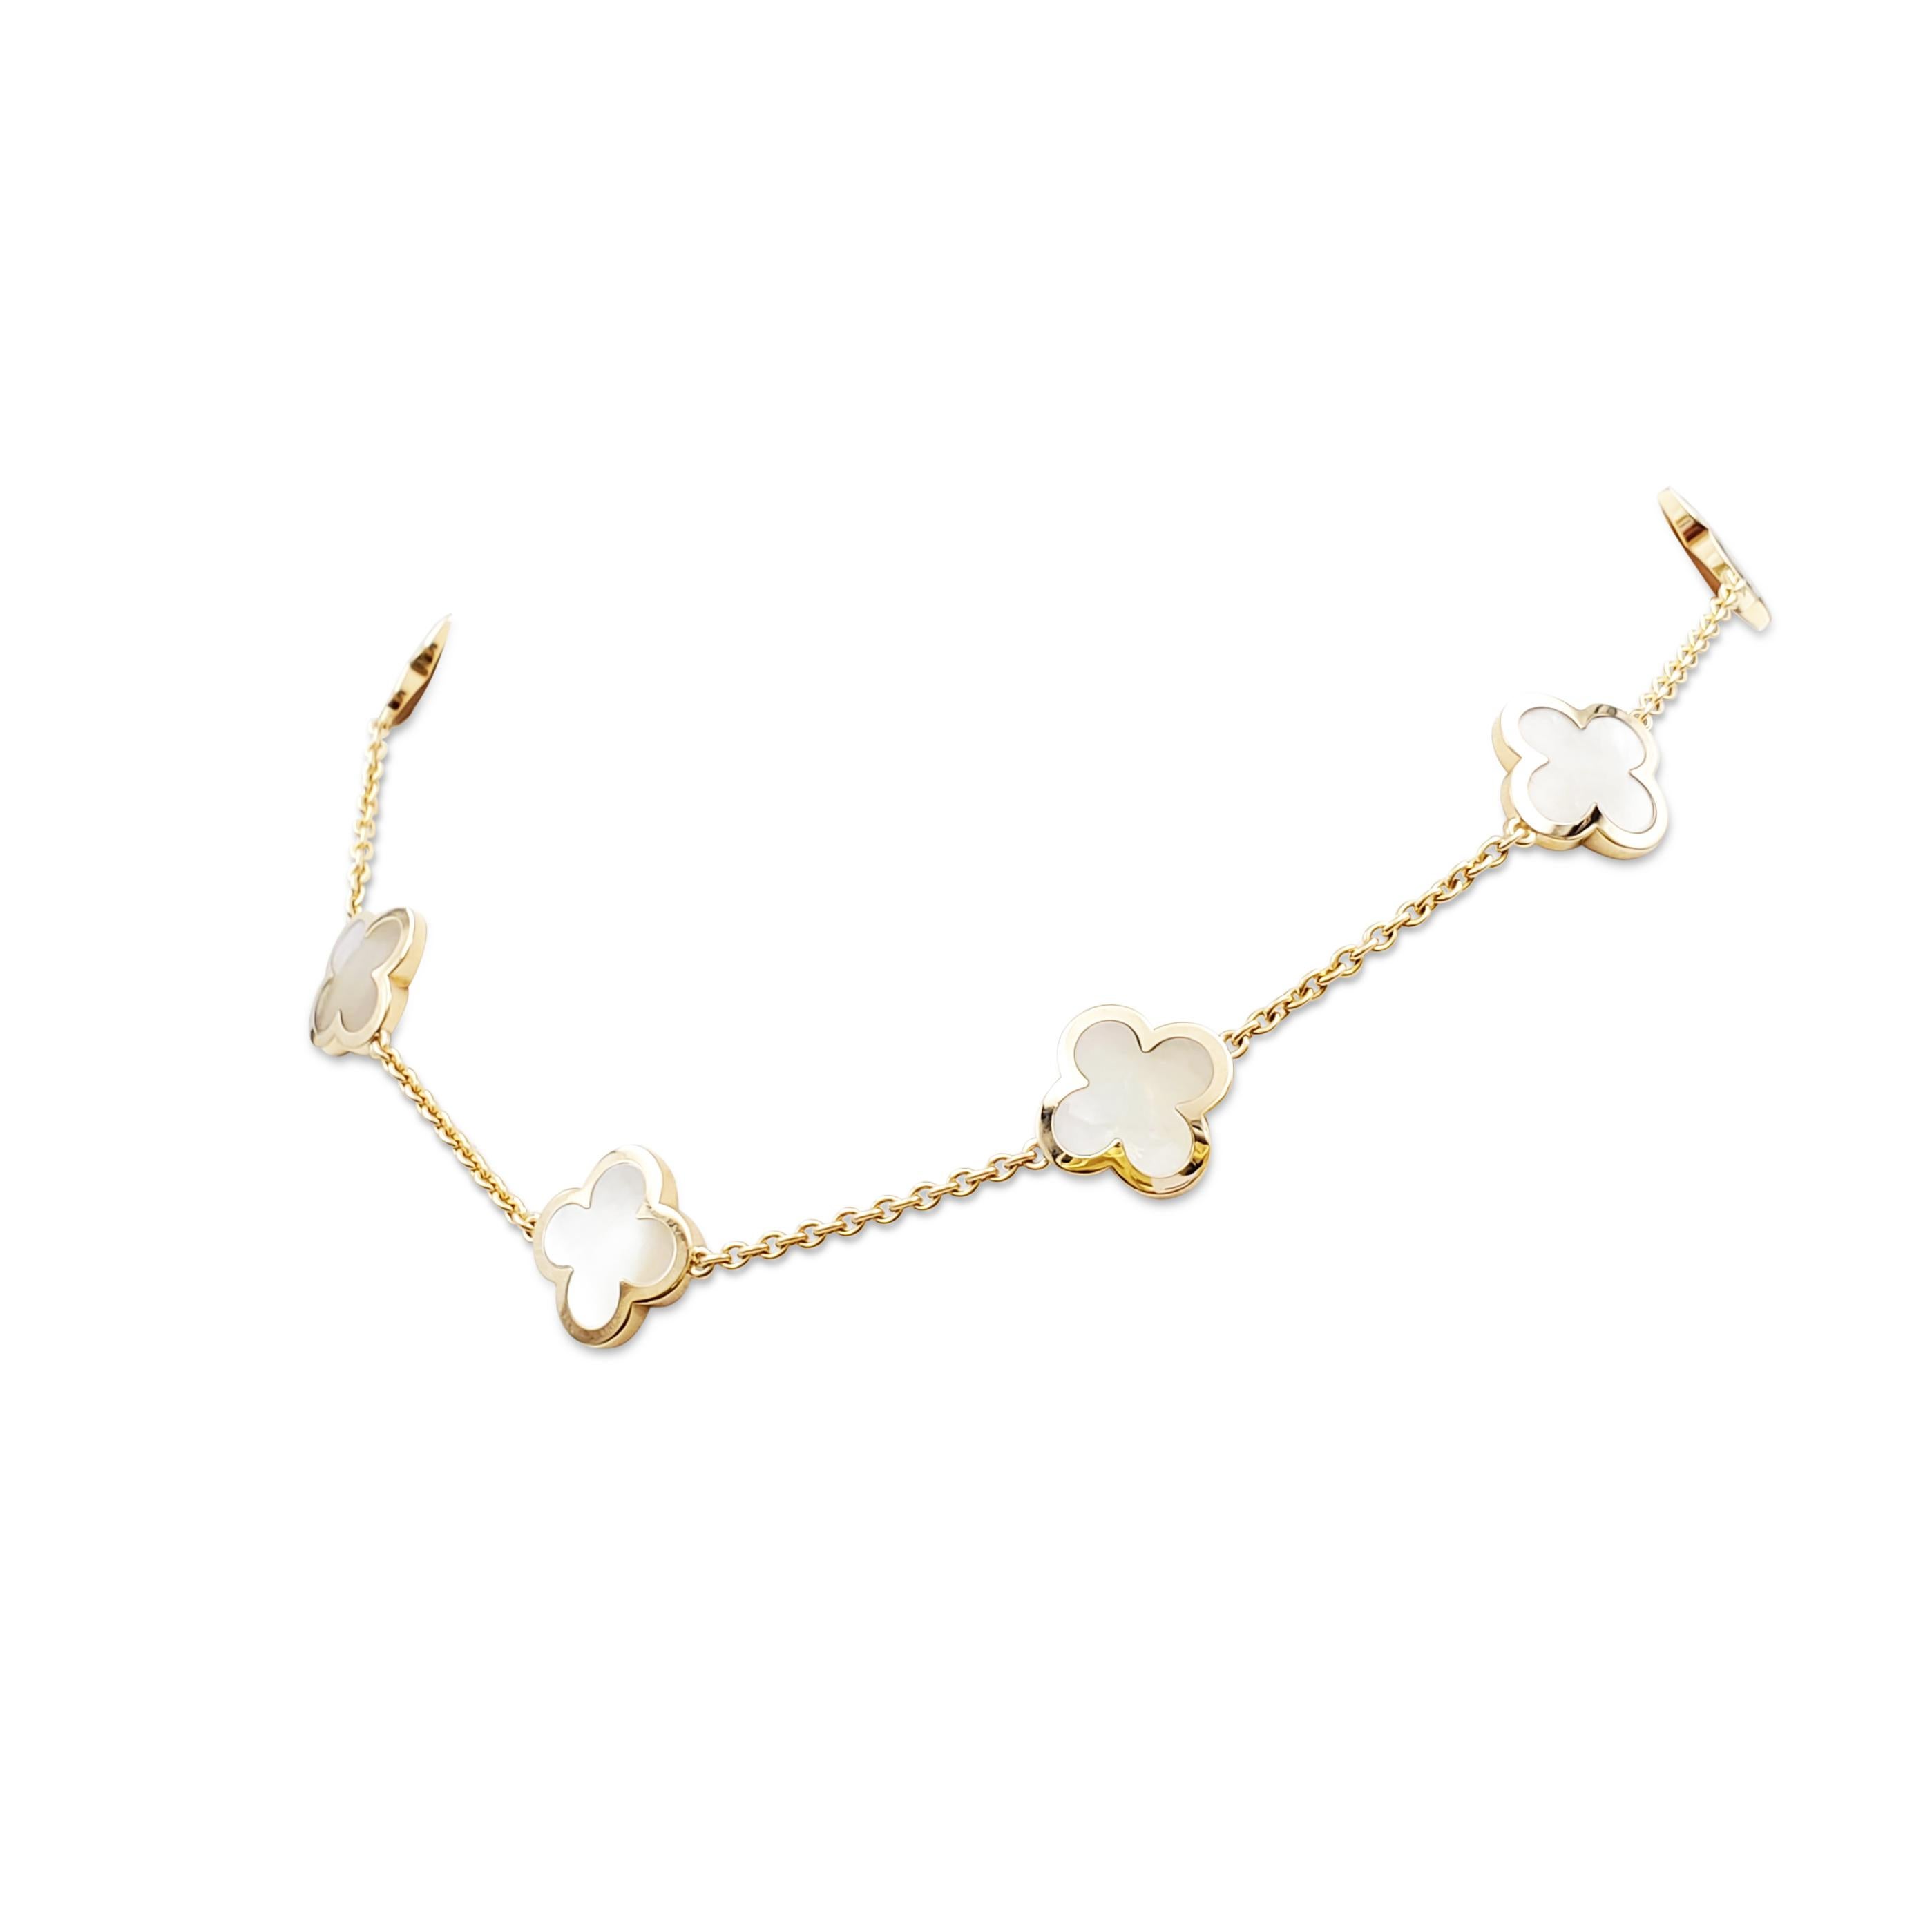 Authentisches Halsband Pure Alhambra von Van Cleef & Arpels aus 18 Karat Gelbgold mit 9 Kleeblattmotiven aus geschnitztem Perlmutt.  Die Halskette misst 16 Zoll in tragbarer Länge.  Signiert VCA, 750, mit Seriennummer und französischen Punzen. Das